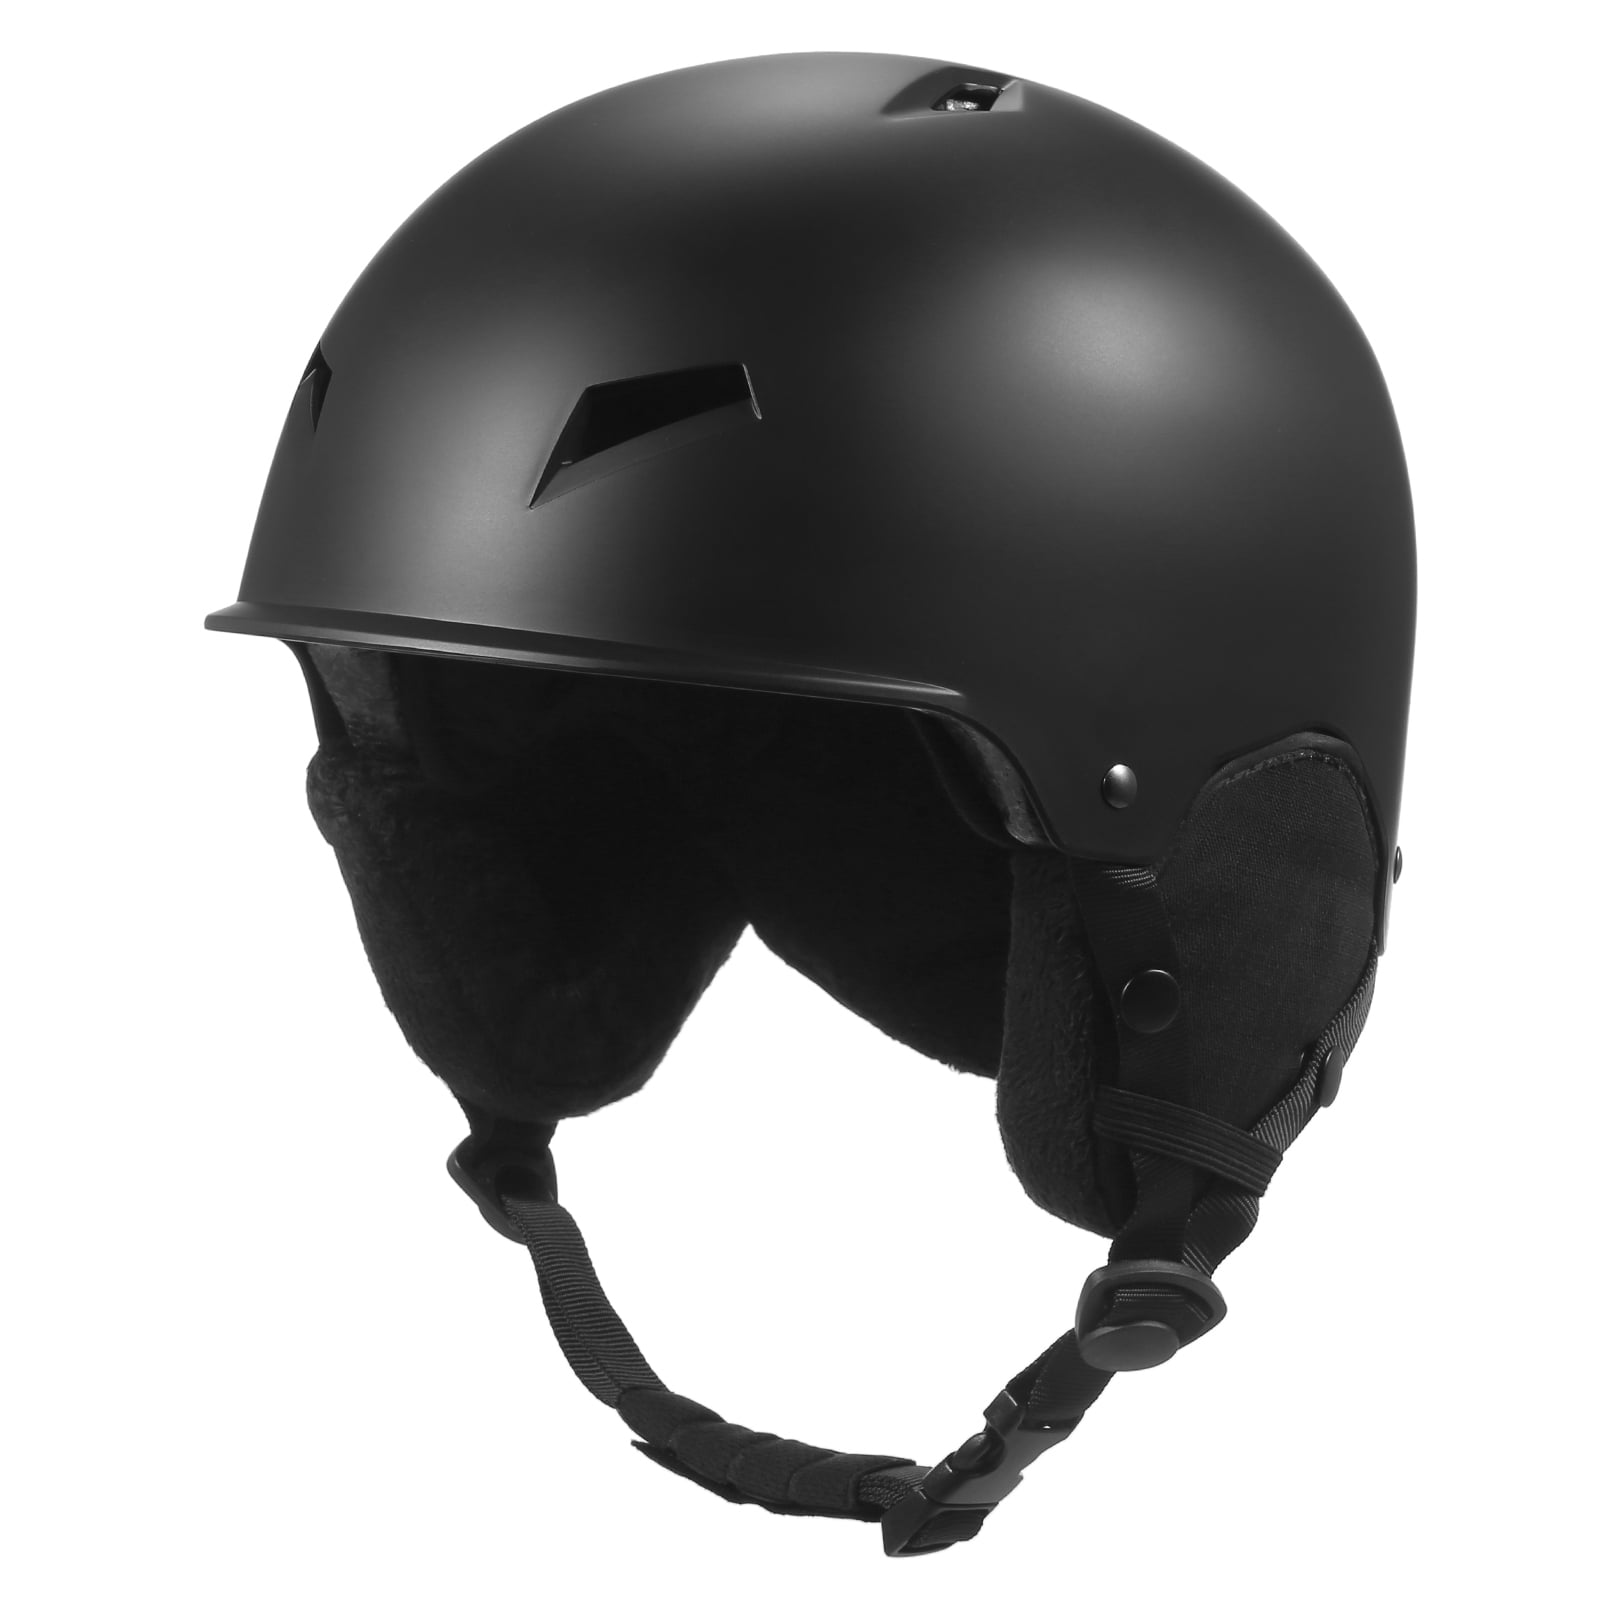 Snow Helmet Adult Adjustable Vents Snow Helmet Unisex Size M/L Ski Helmet 